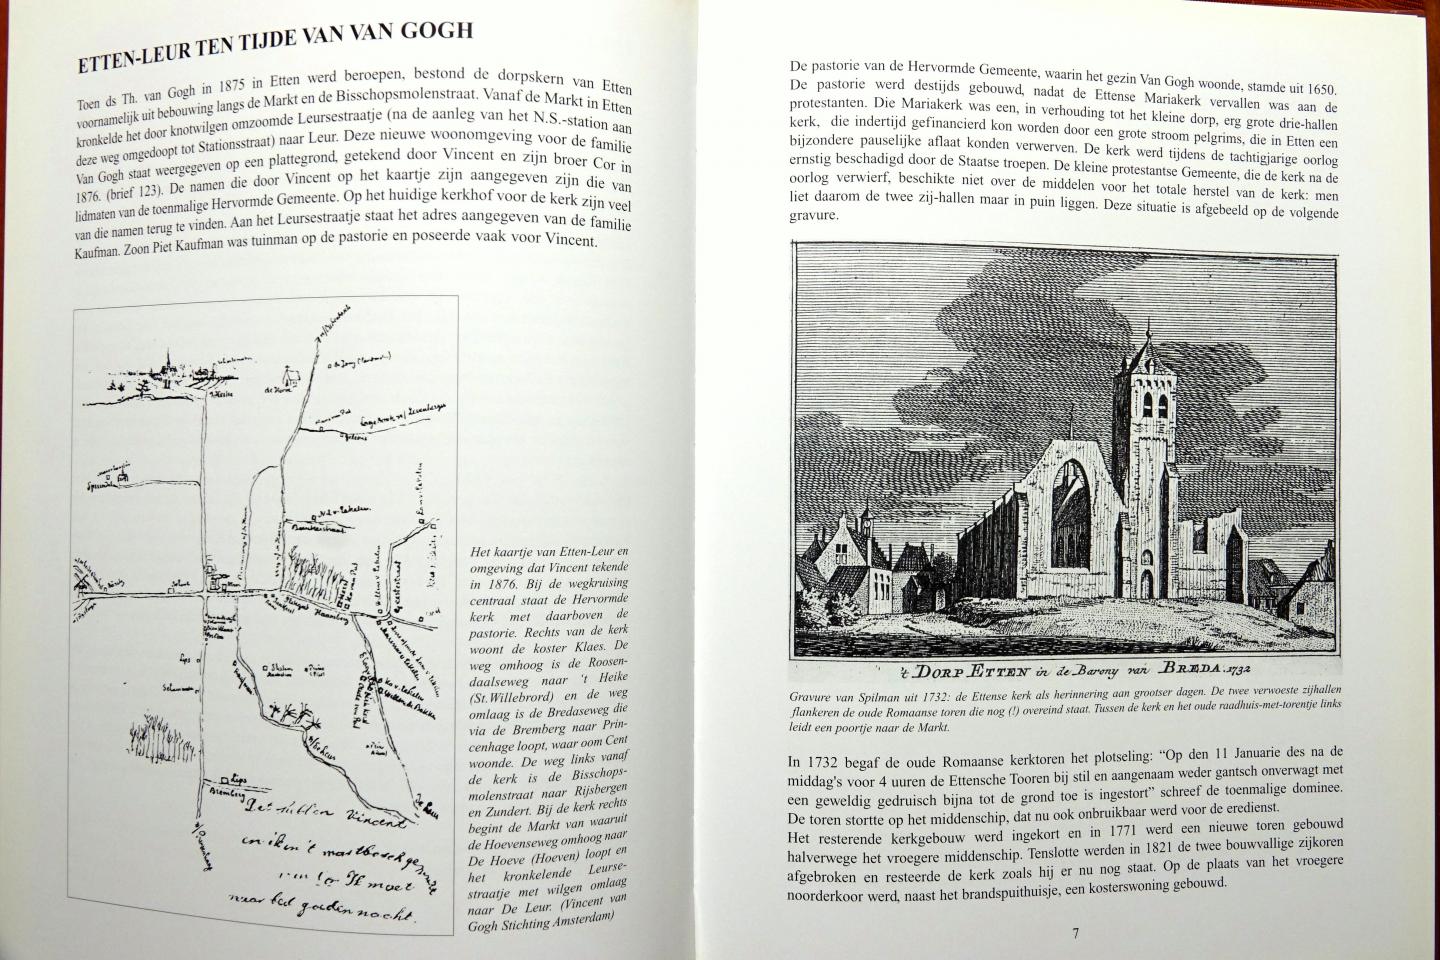 Rozemeyer, J.A. - Van Gogh in Etten / druk 2